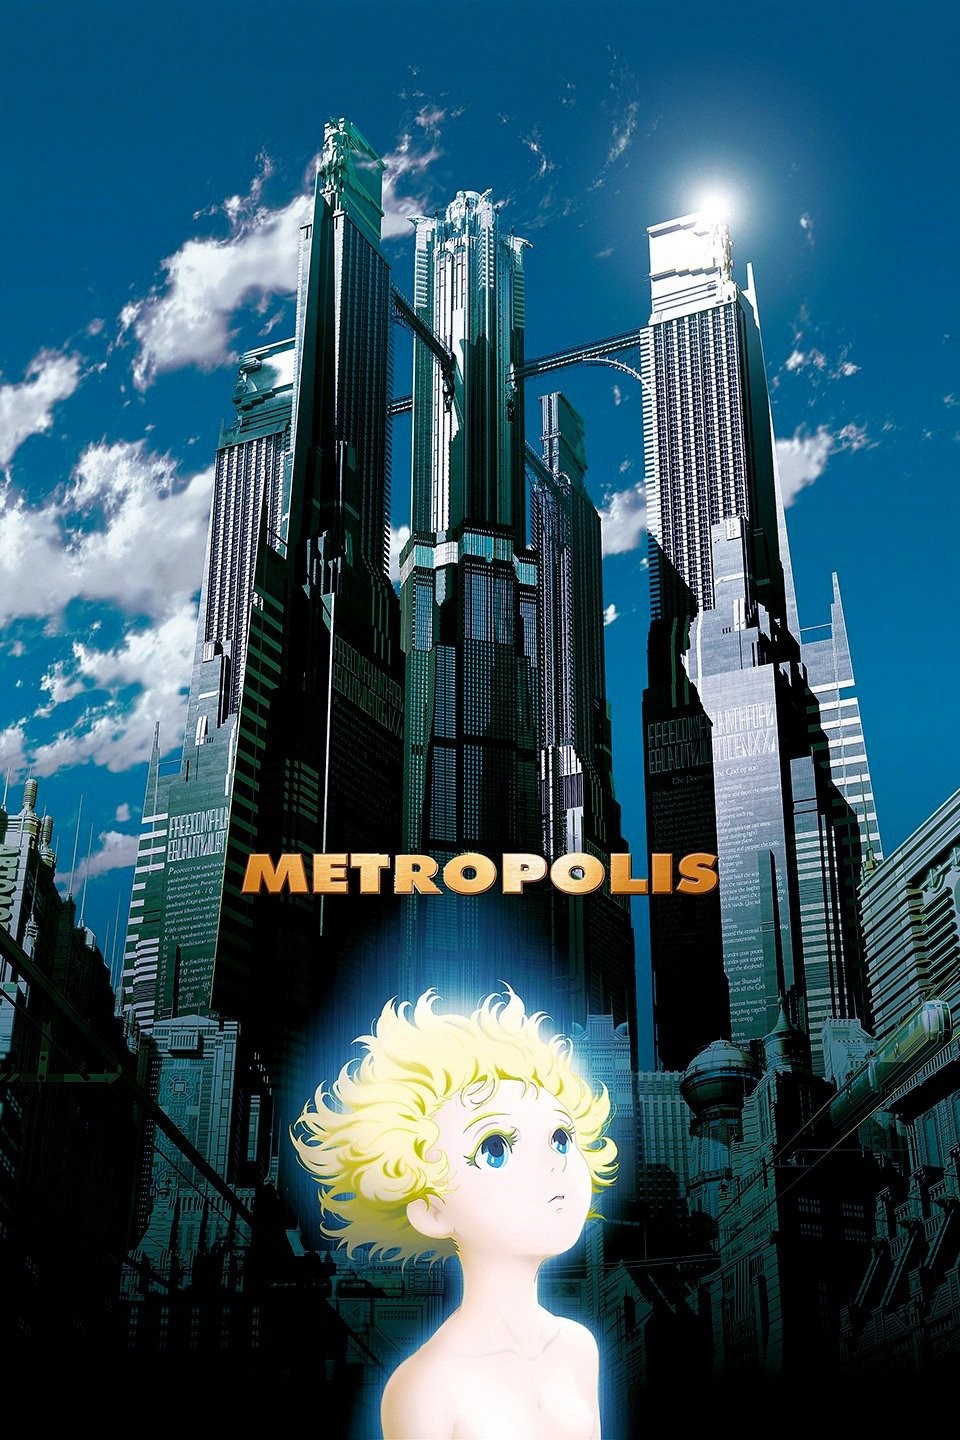 Best Buy: Kaena: The Prophecy/Metropolis [3 Discs] [DVD]